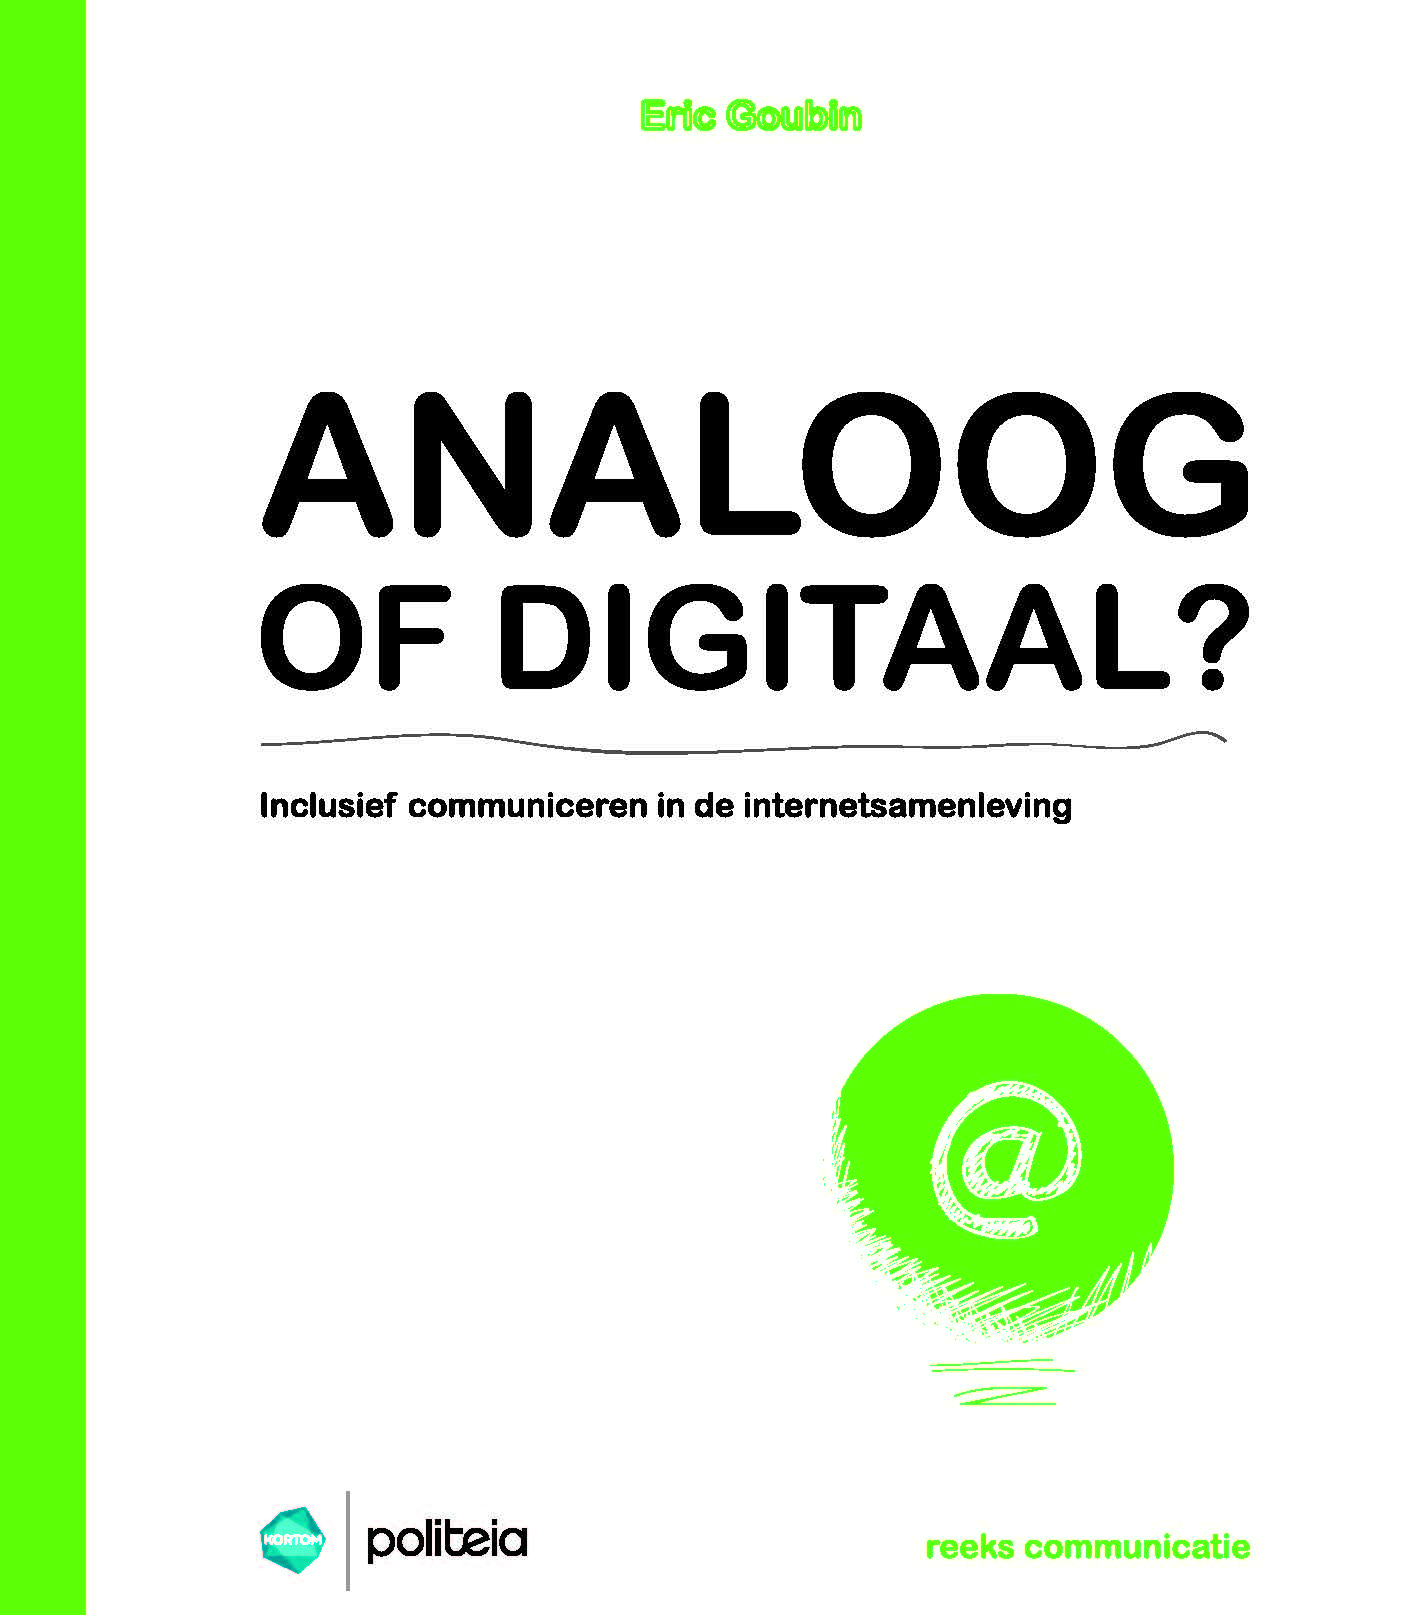 Analoog of digitaal?